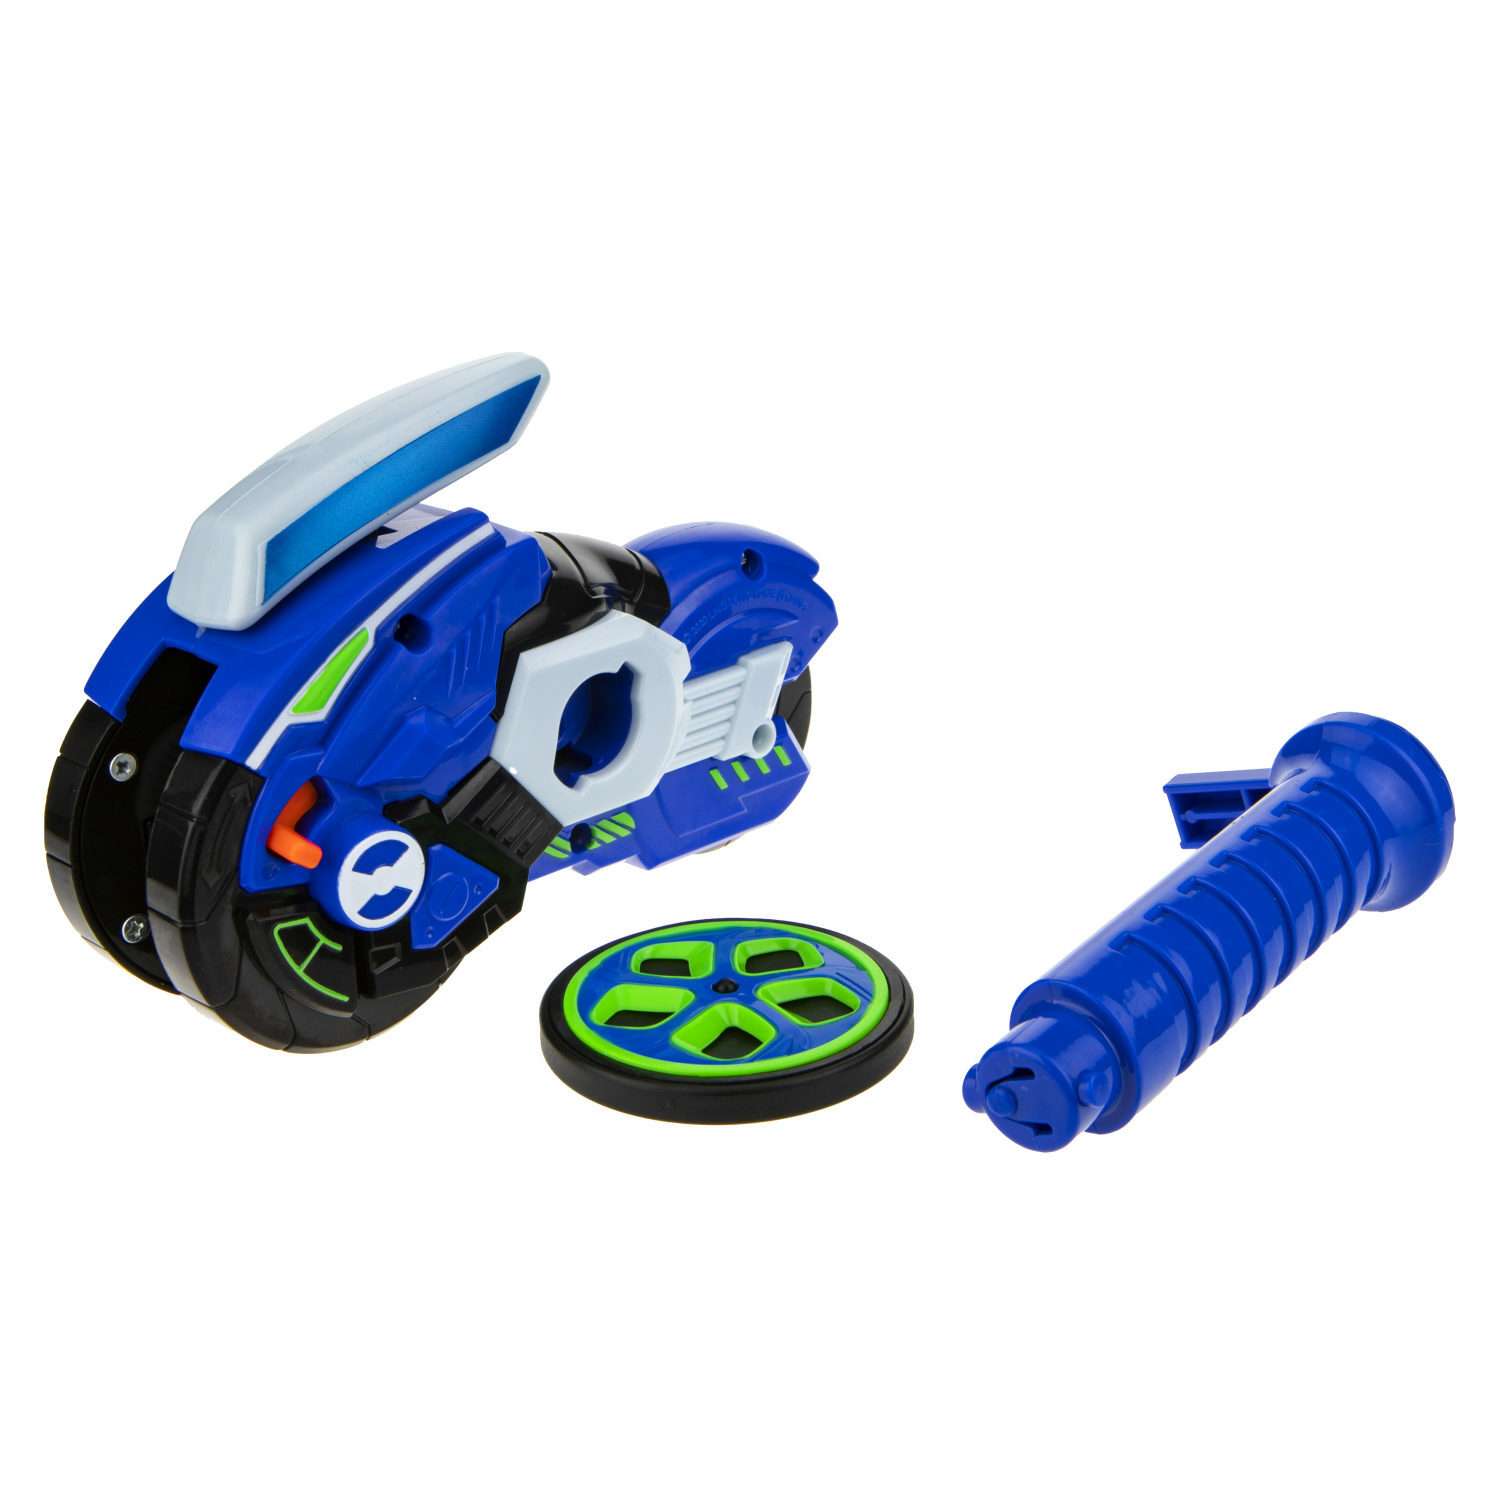 Игровой набор Hot Wheels Spin Racer Синяя Молния игрушечный мотоцикл с колесом-гироскопом Т19373 - фото 6